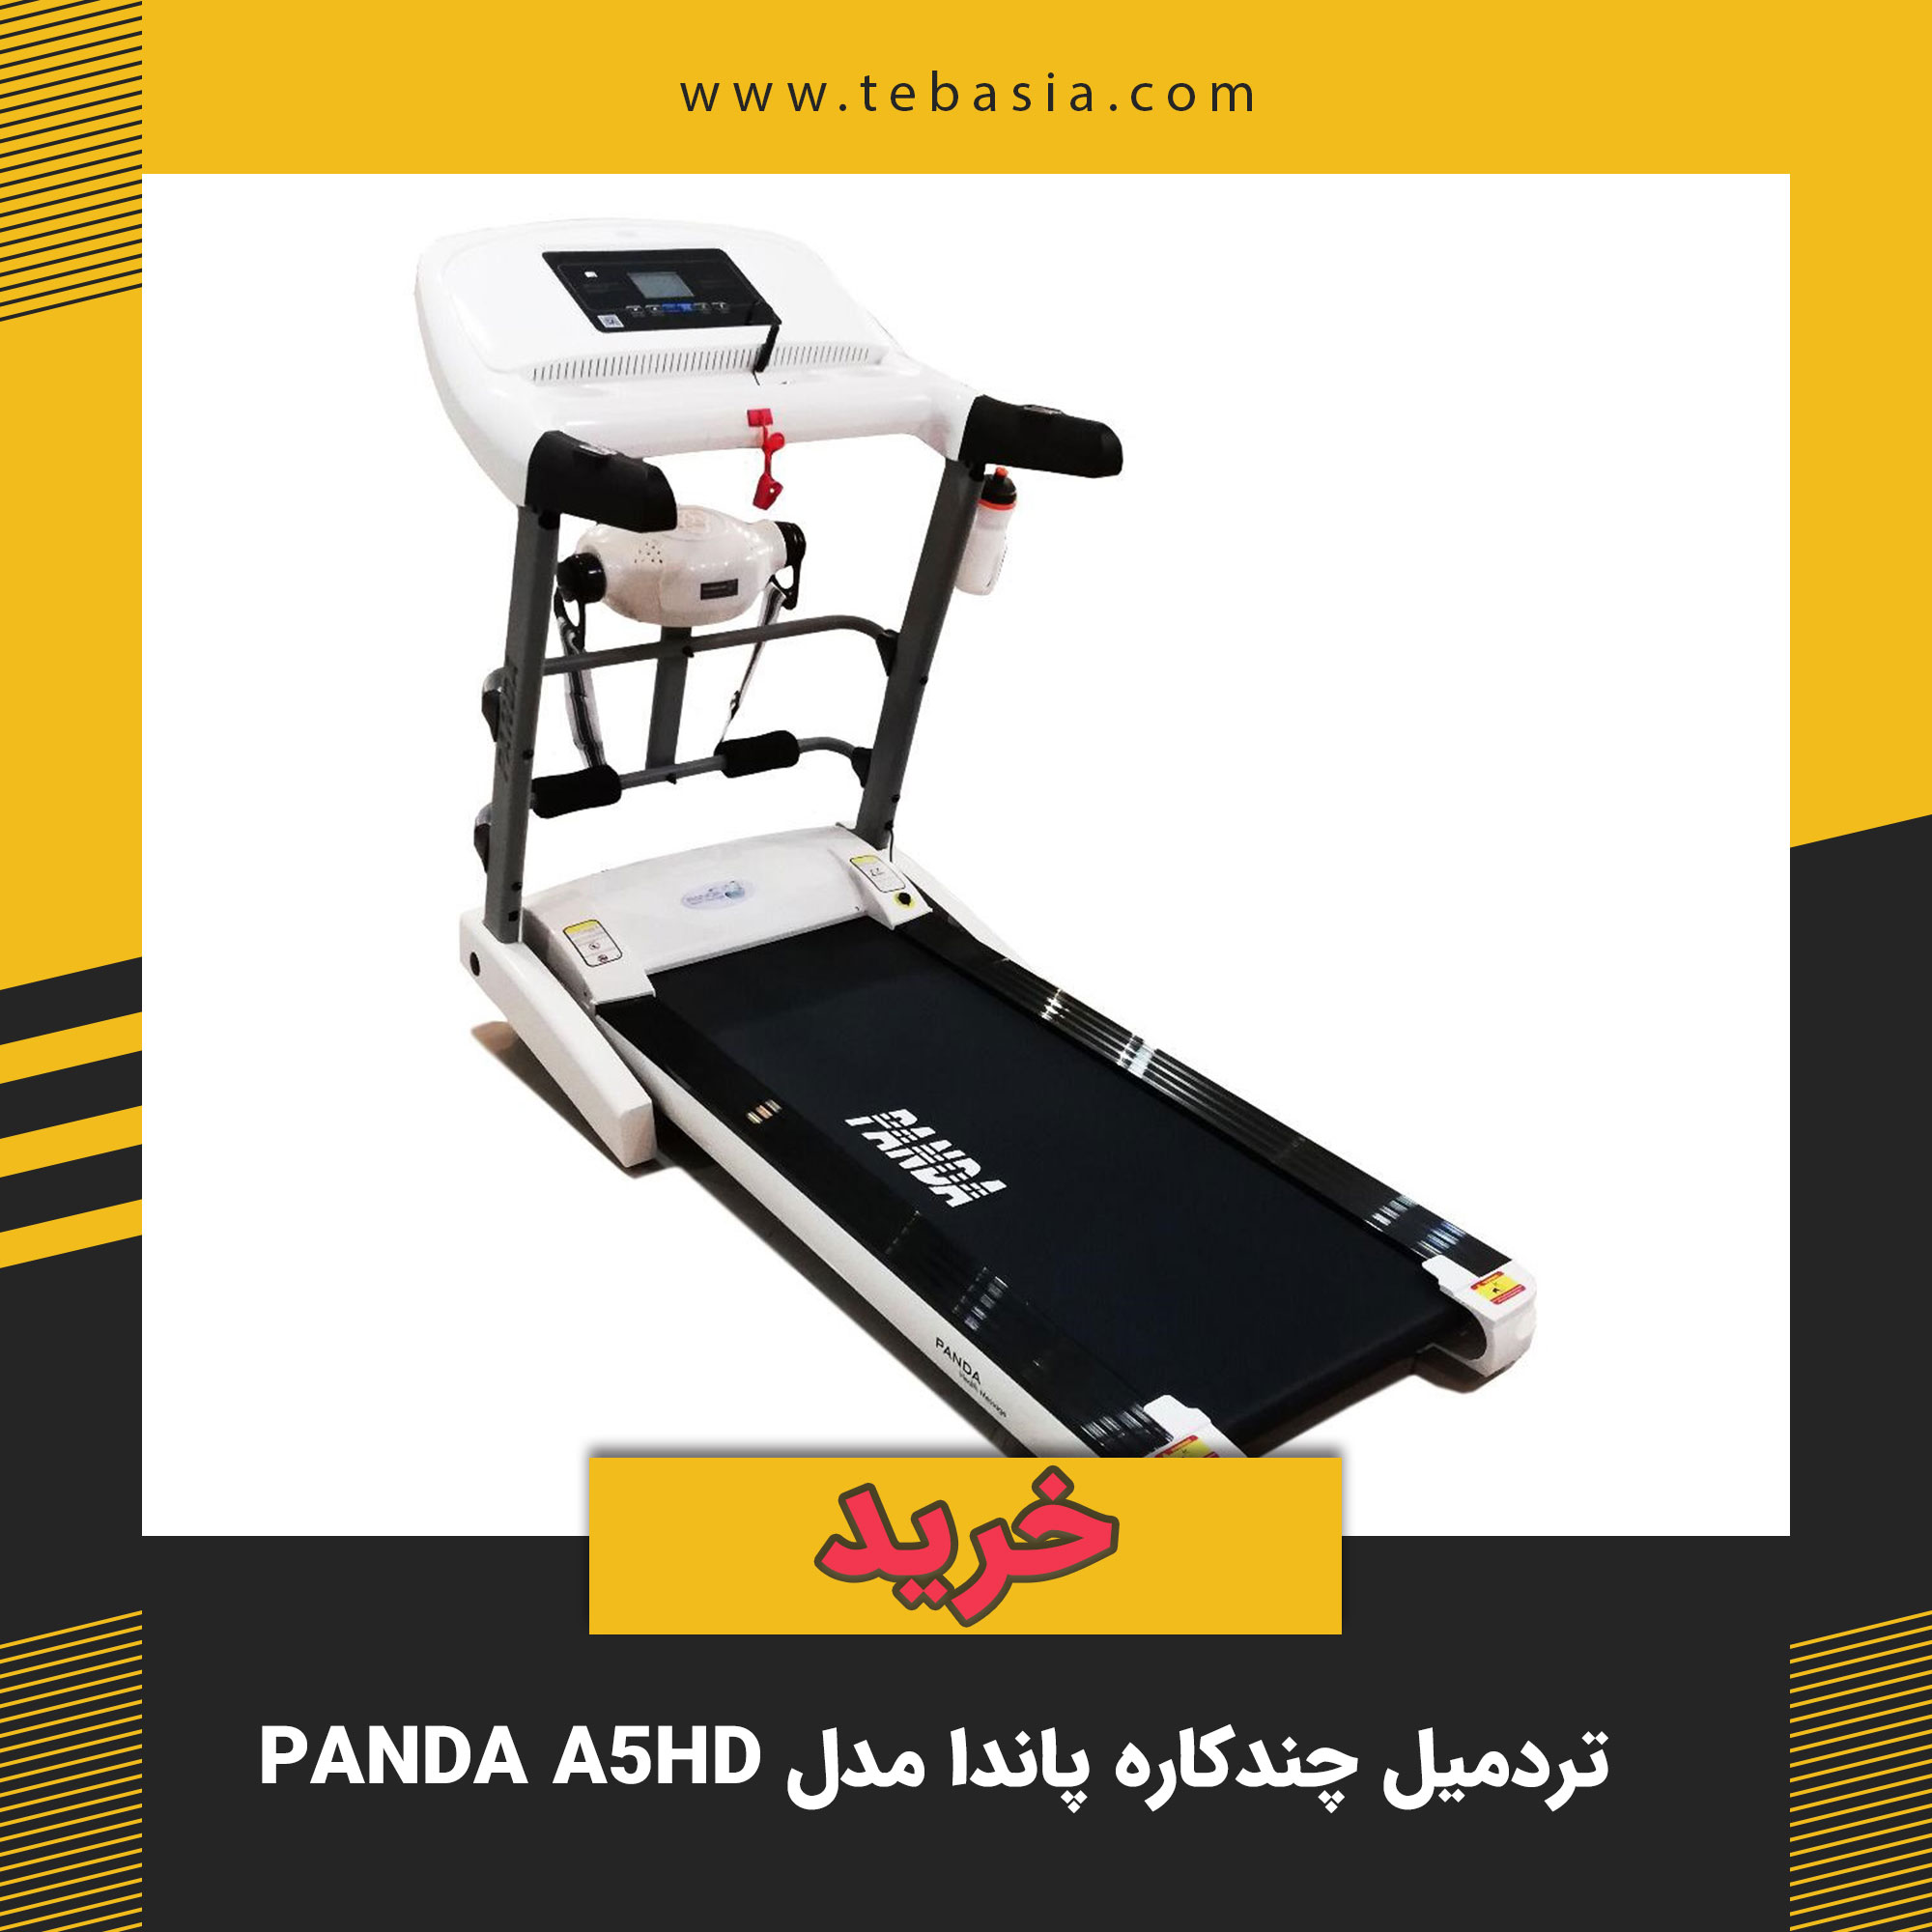 تردمیل چندکاره پاندا مدل Panda A5HD - طب آسیا